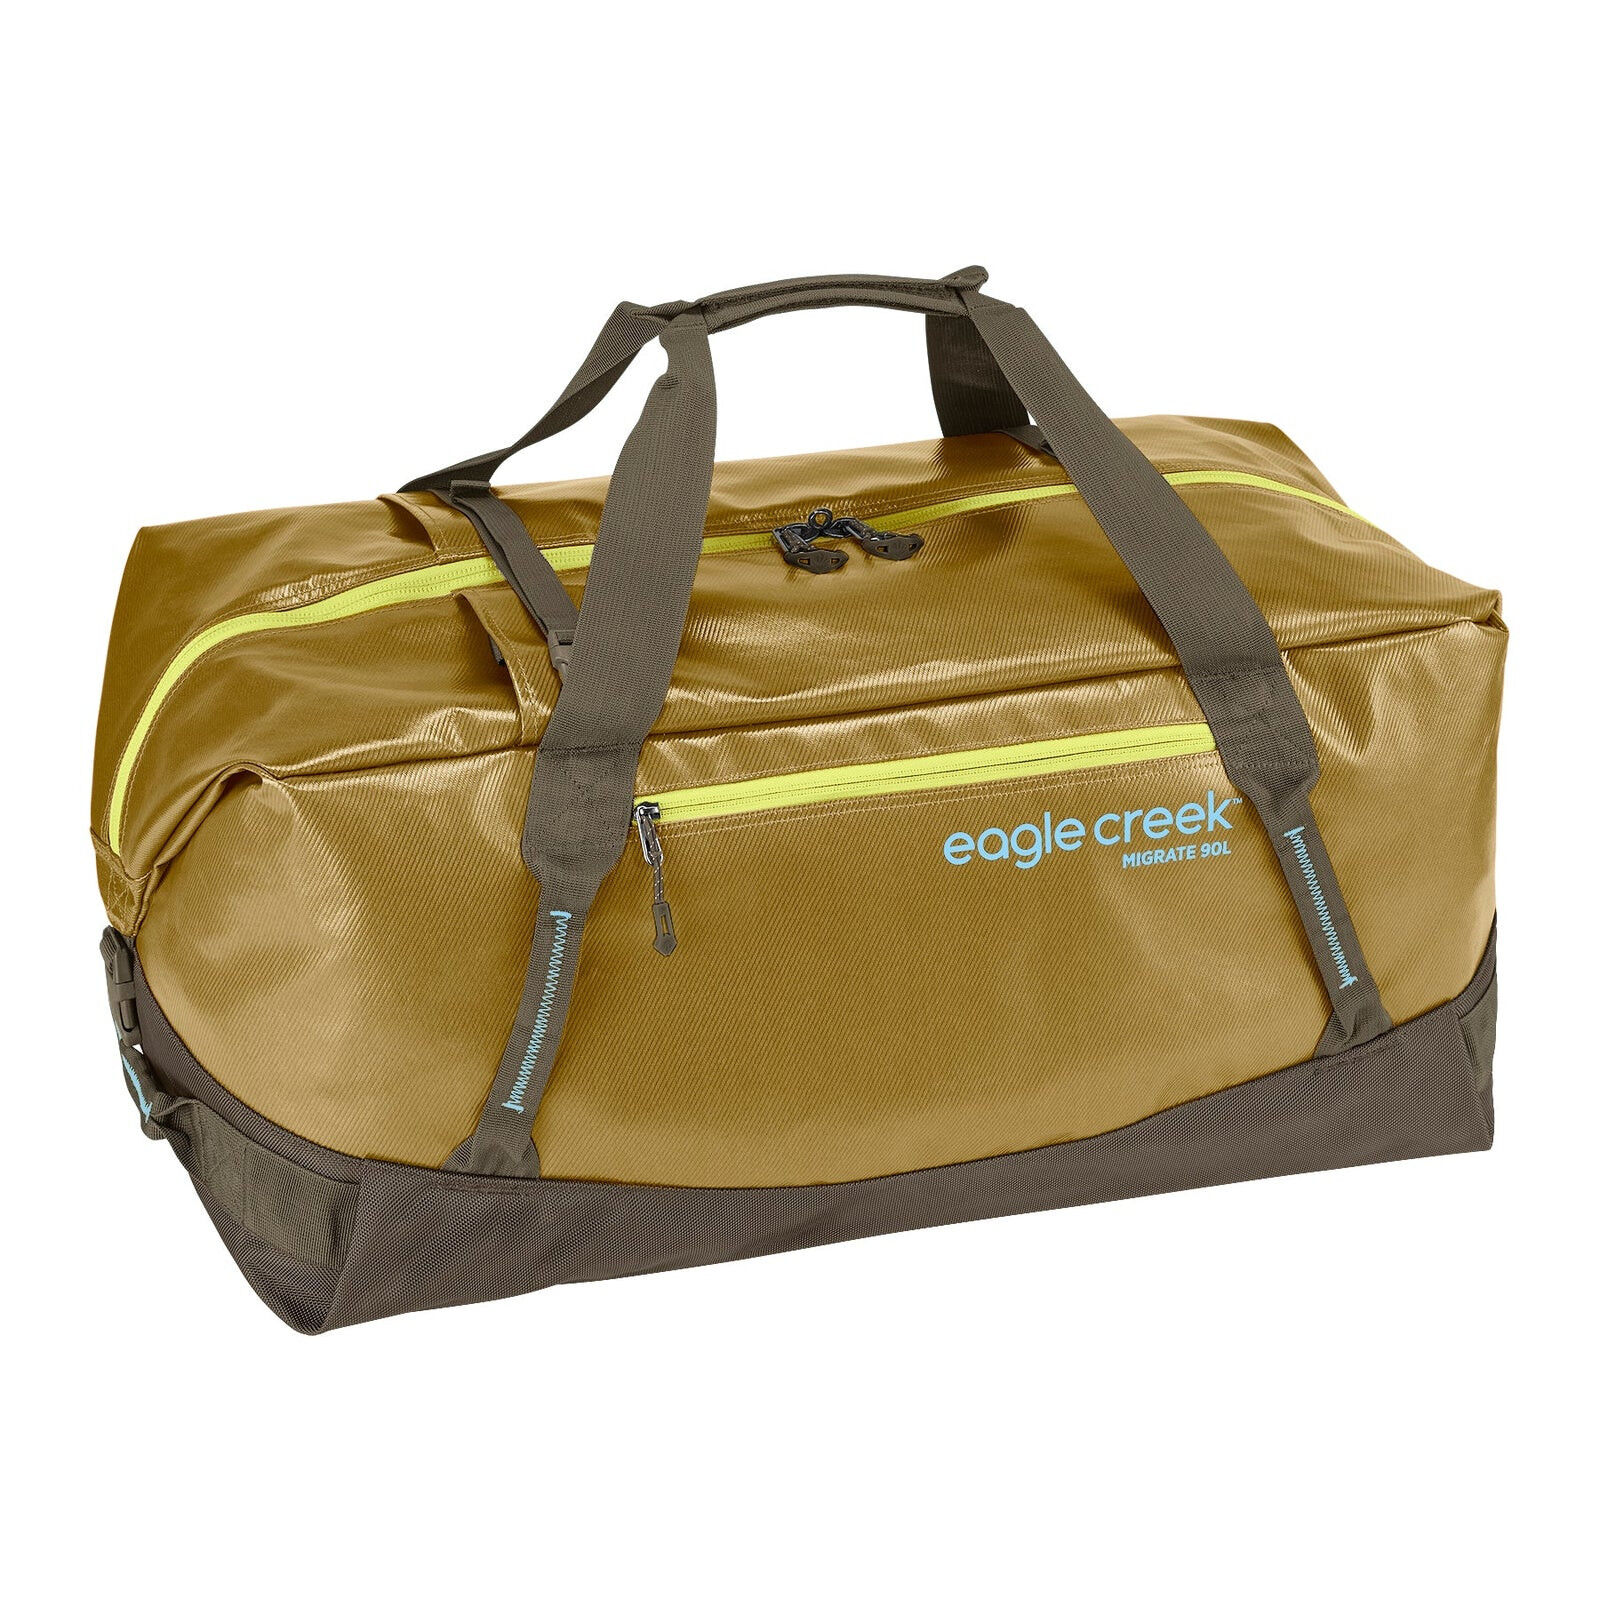 Eagle Creek Migrate Duffel 90L - Travel bag